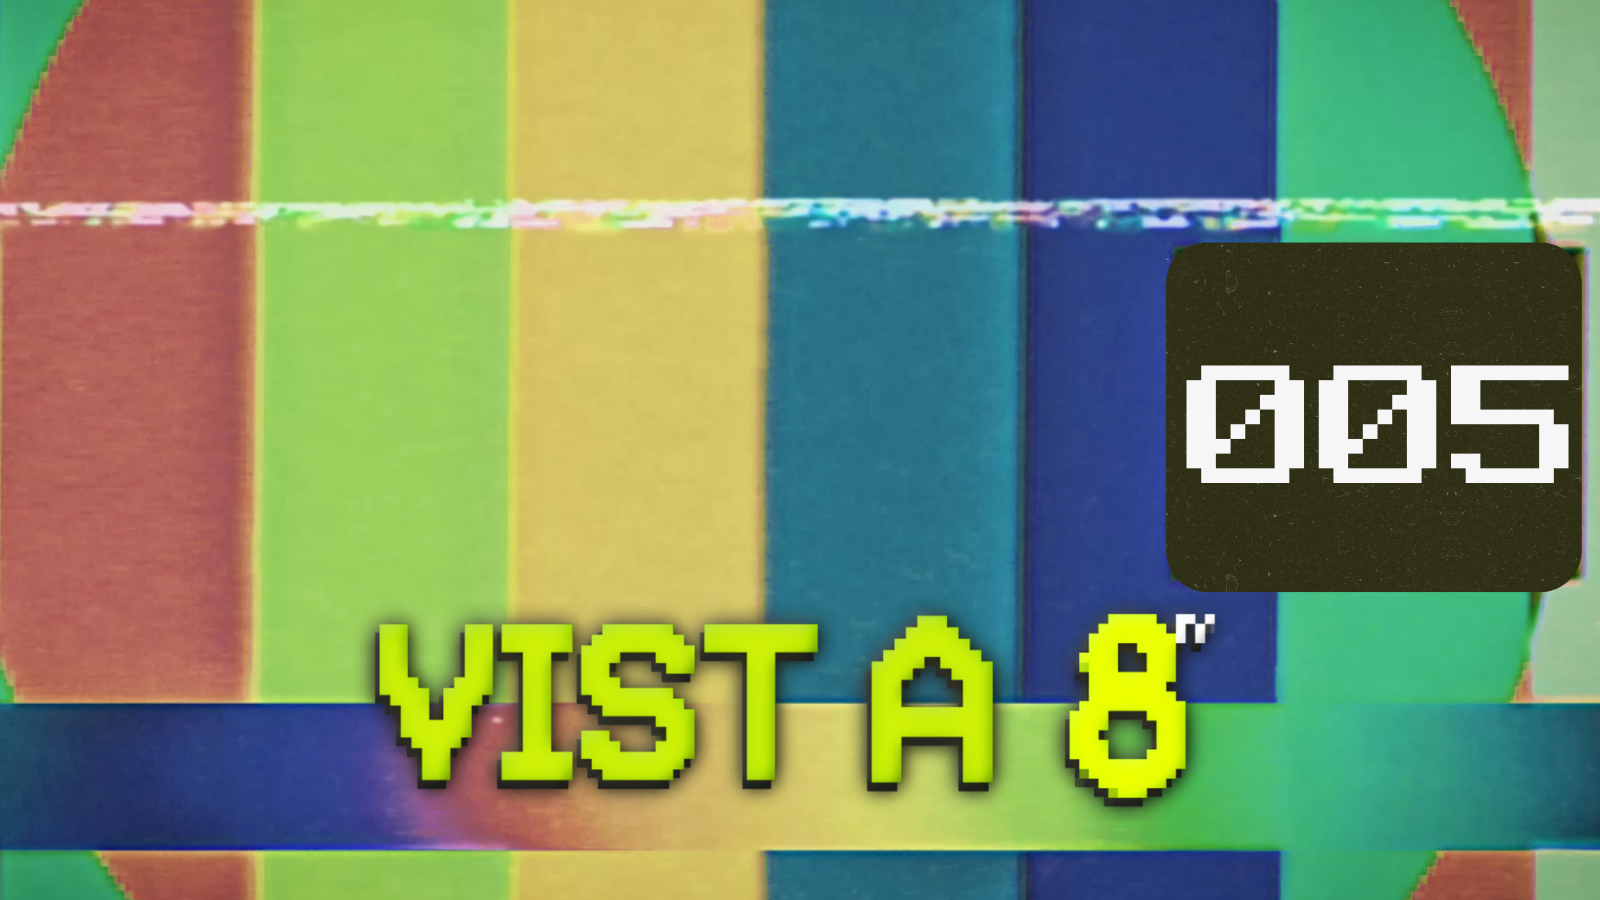 VIST A 8TV - EPISODI 5